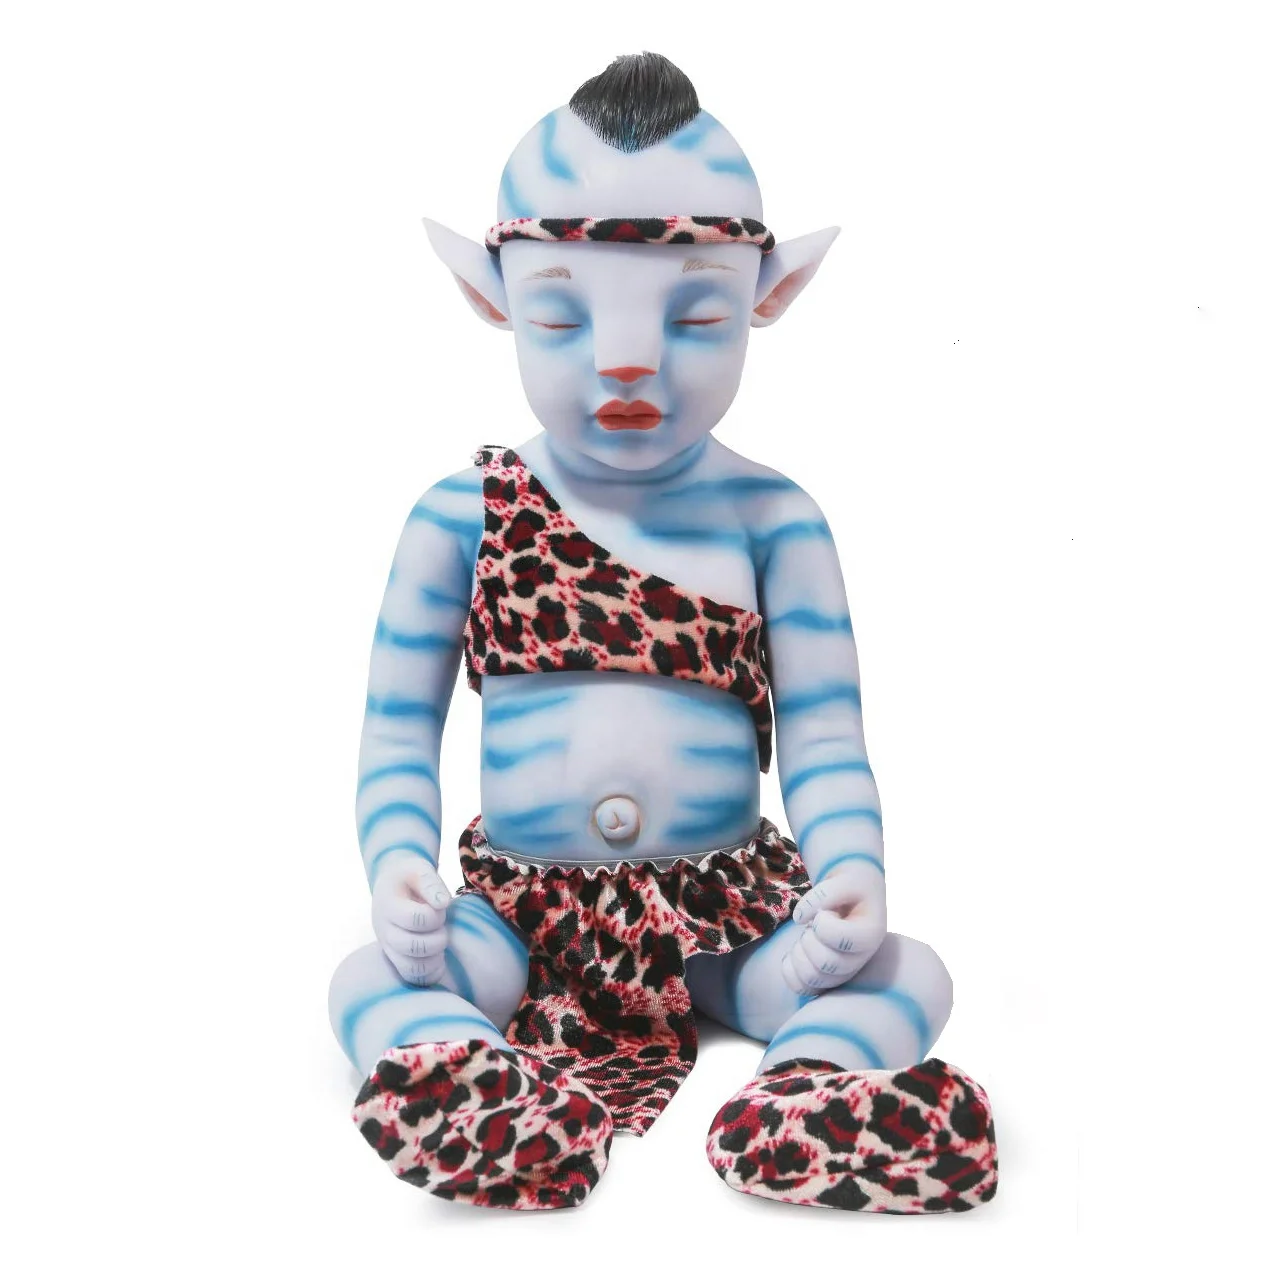 Handmade Soft Full Silicone Reborn Avatar Baby Doll Lifelike Realistic Boy 20" 